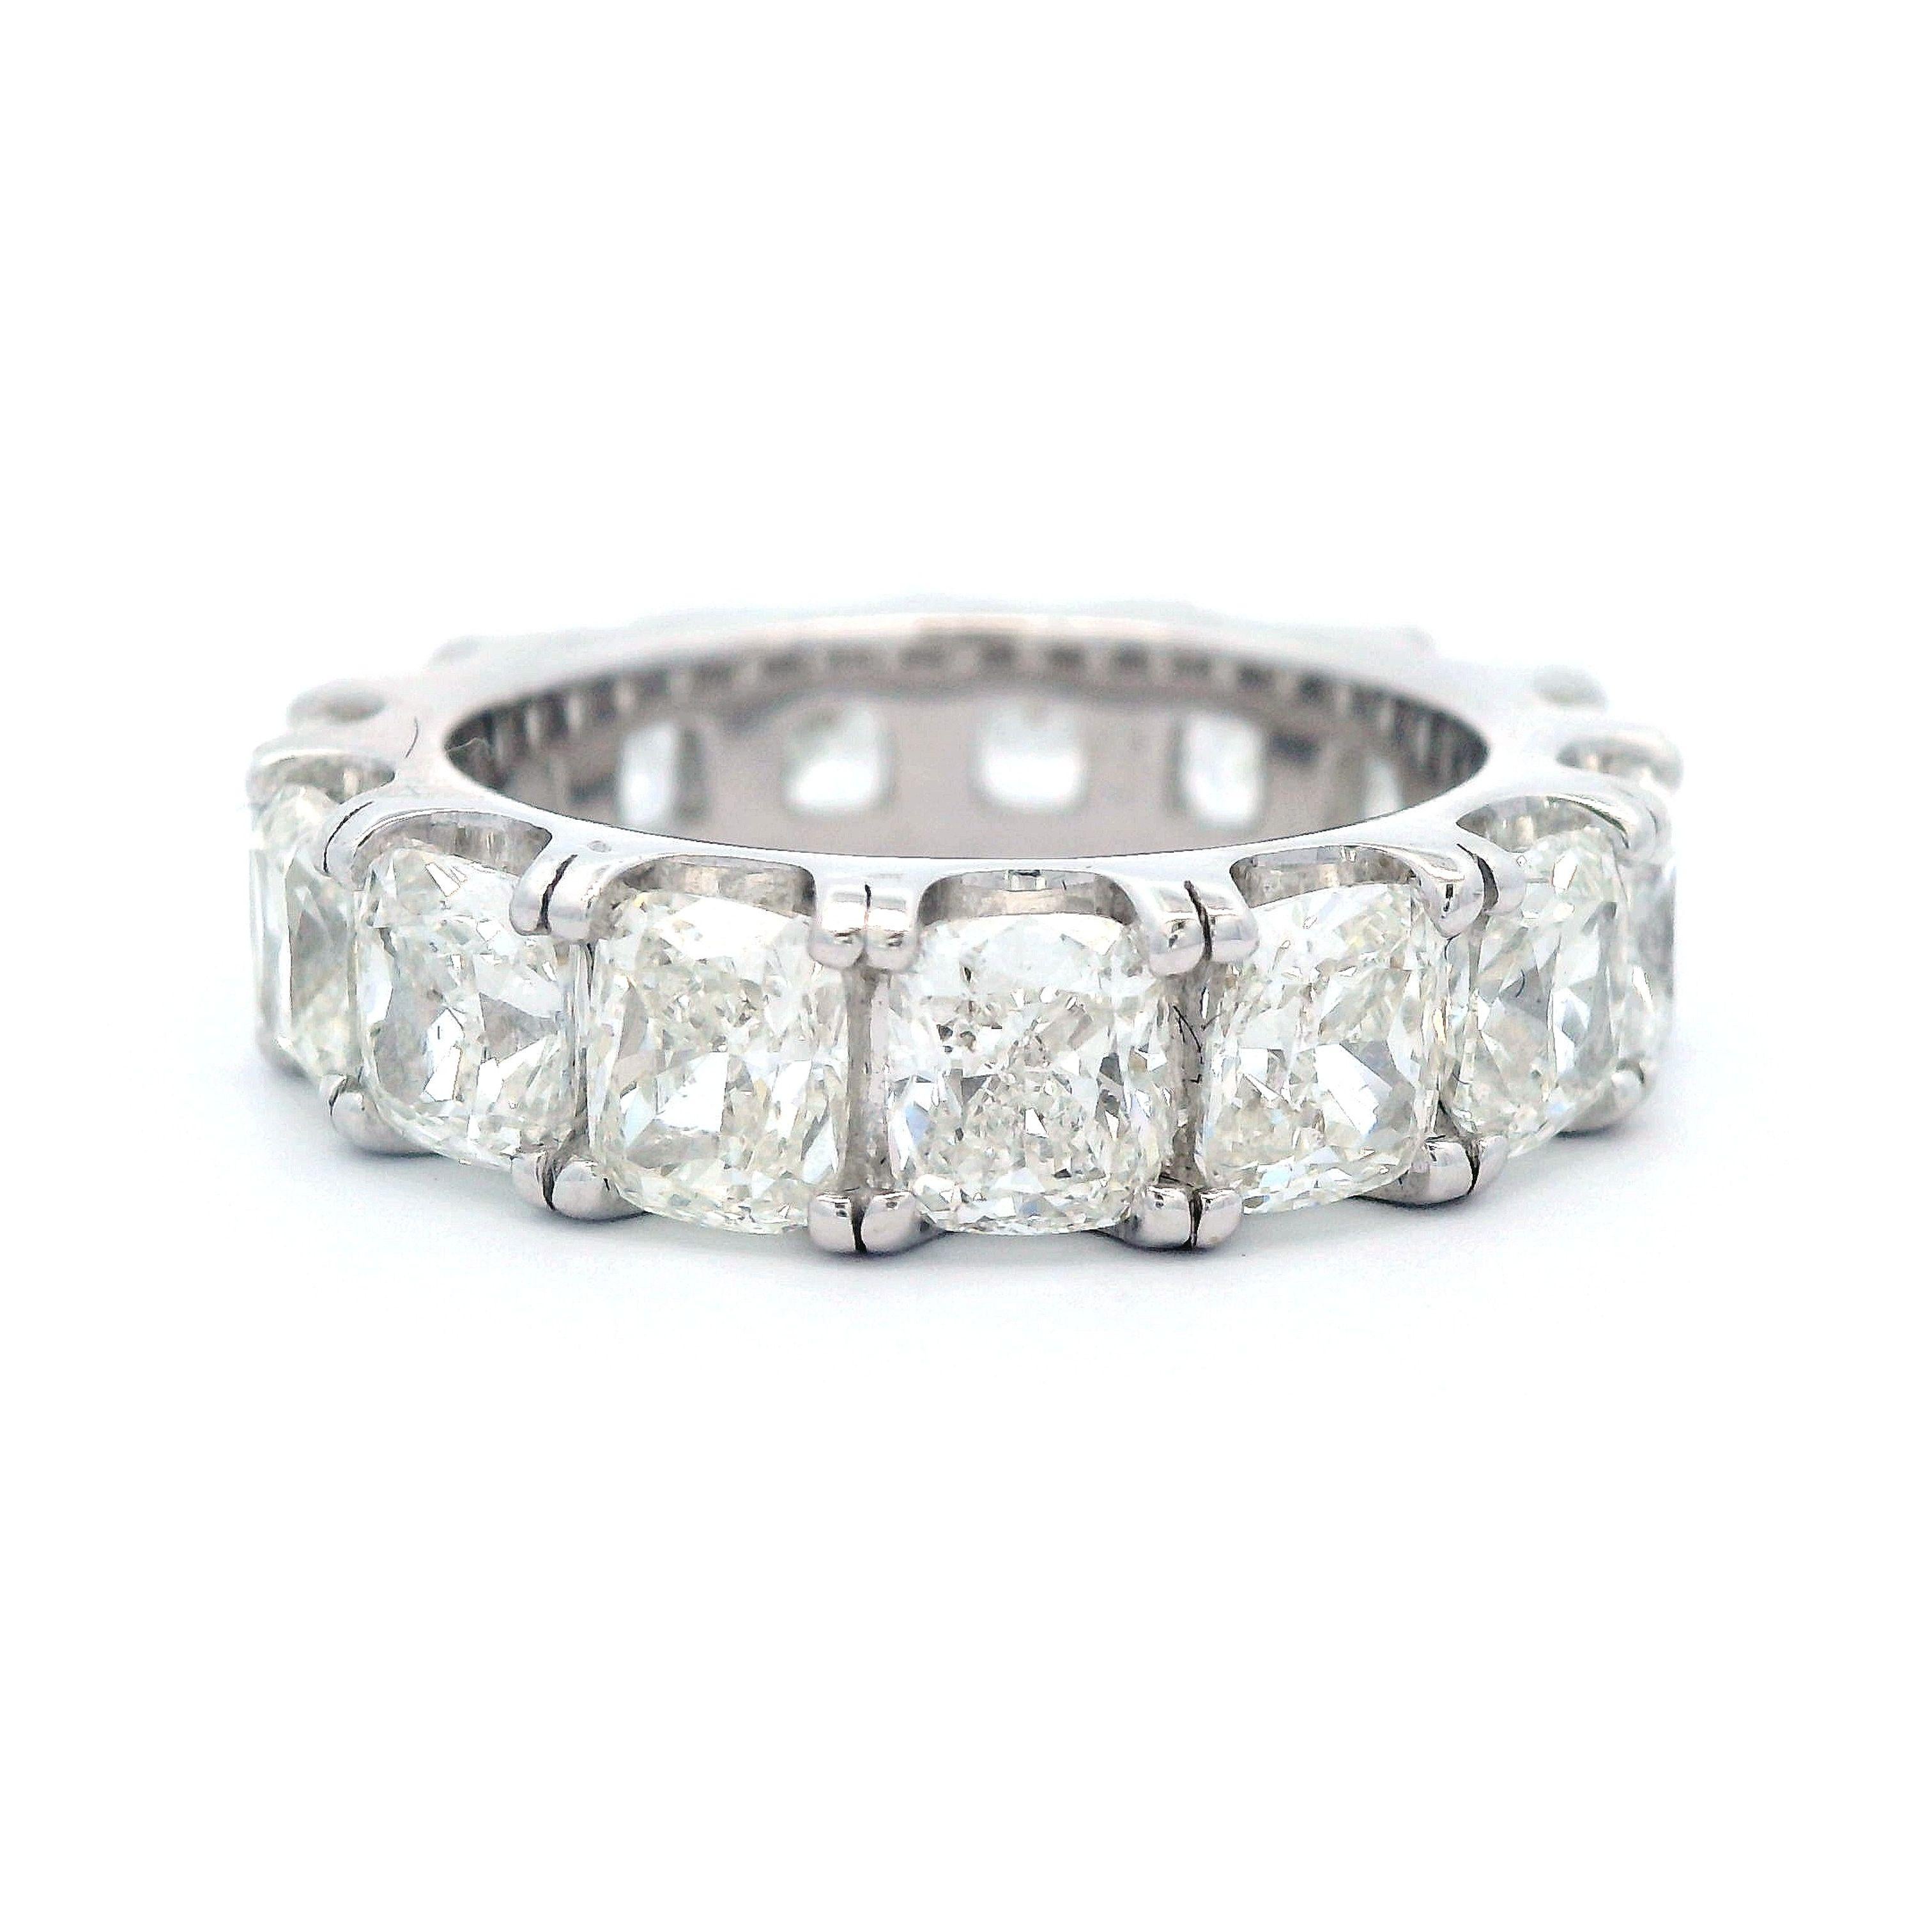 Superbe bracelet d'éternité en diamant taille coussin, By Alexander Beverly Hills.
15 diamants de taille coussin, 7,68 carats. Couleur G/I et pureté VS2/SI1. Or blanc 18 carats, 7,96 grammes, taille 6,5. 
Sur demande, une évaluation numérique à jour